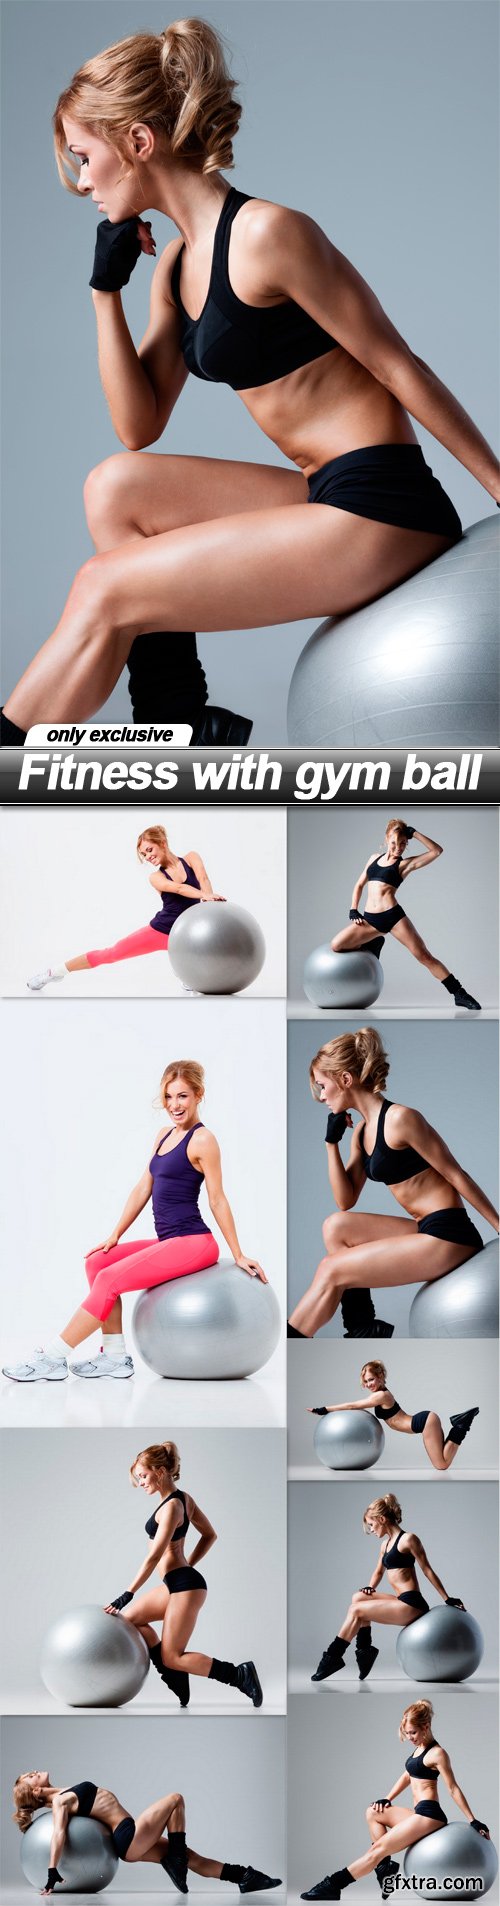 Fitness with gym ball - 9 UHQ JPEG